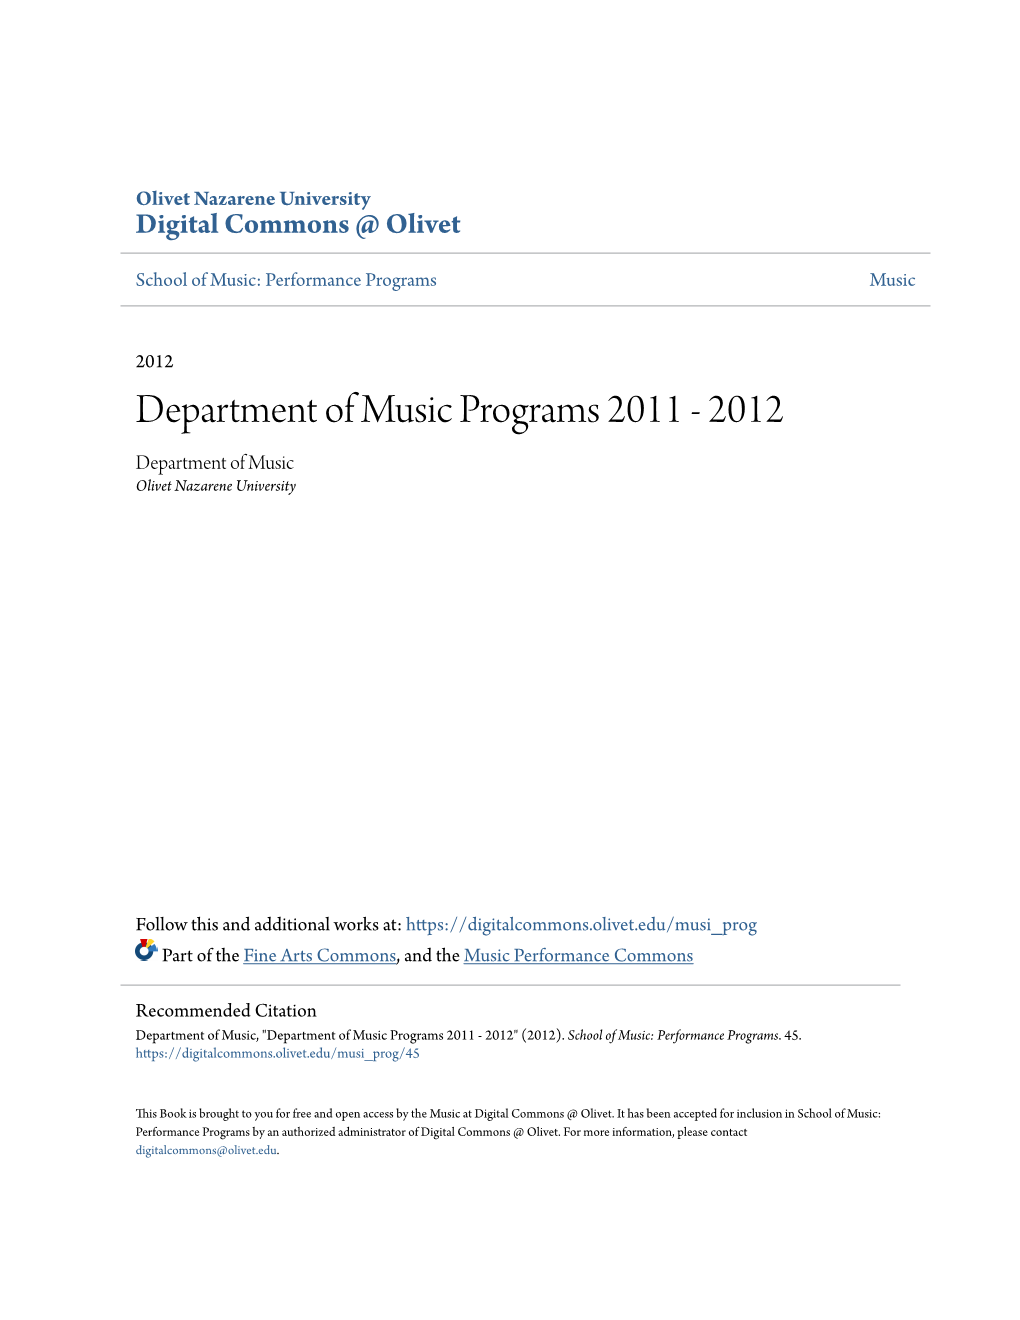 Department of Music Programs 2011 - 2012 Department of Music Olivet Nazarene University